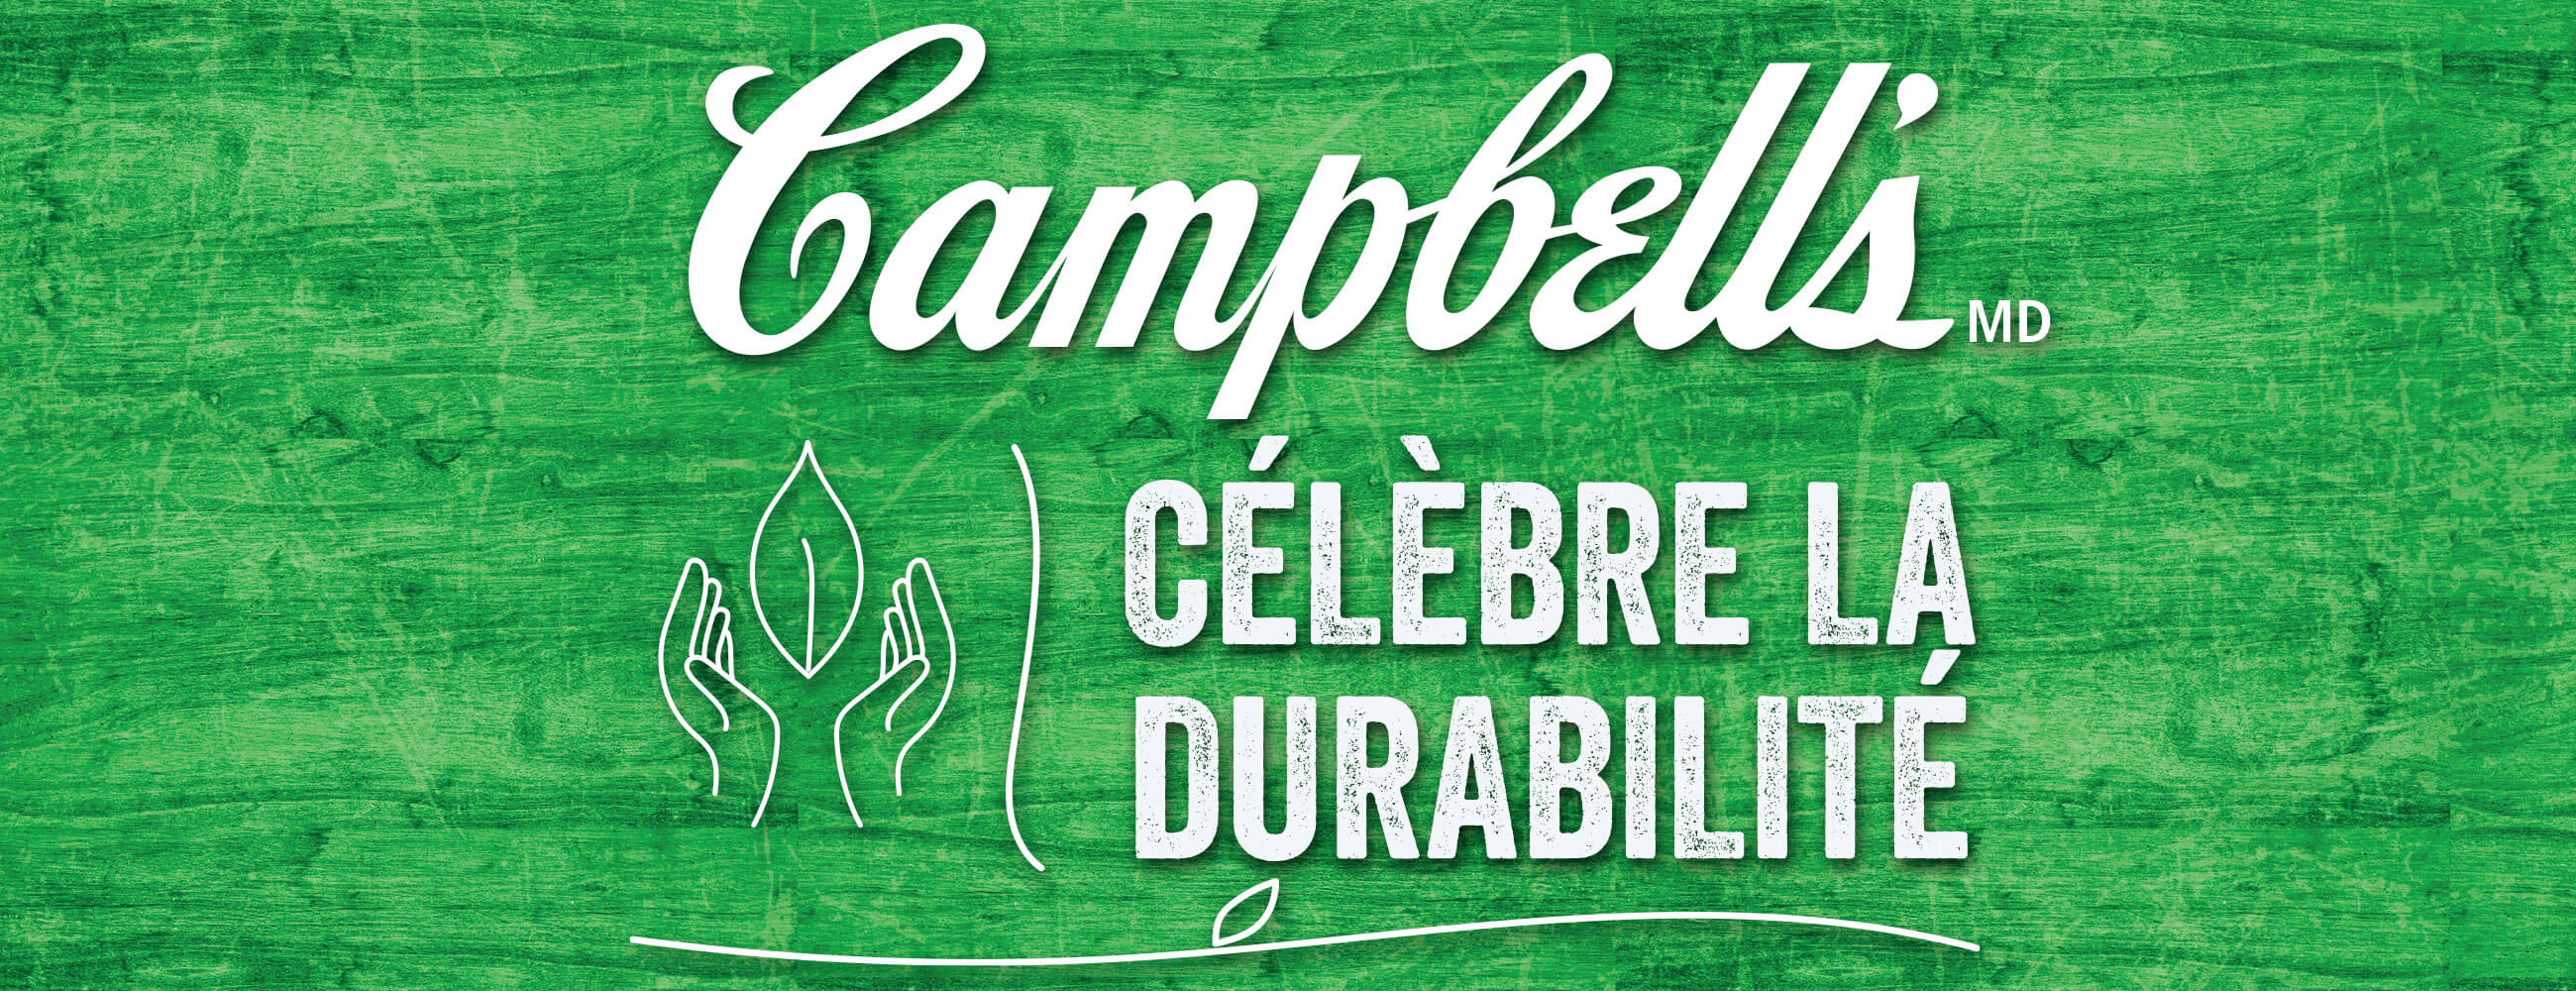 Campbell's célèbre la durabilité
